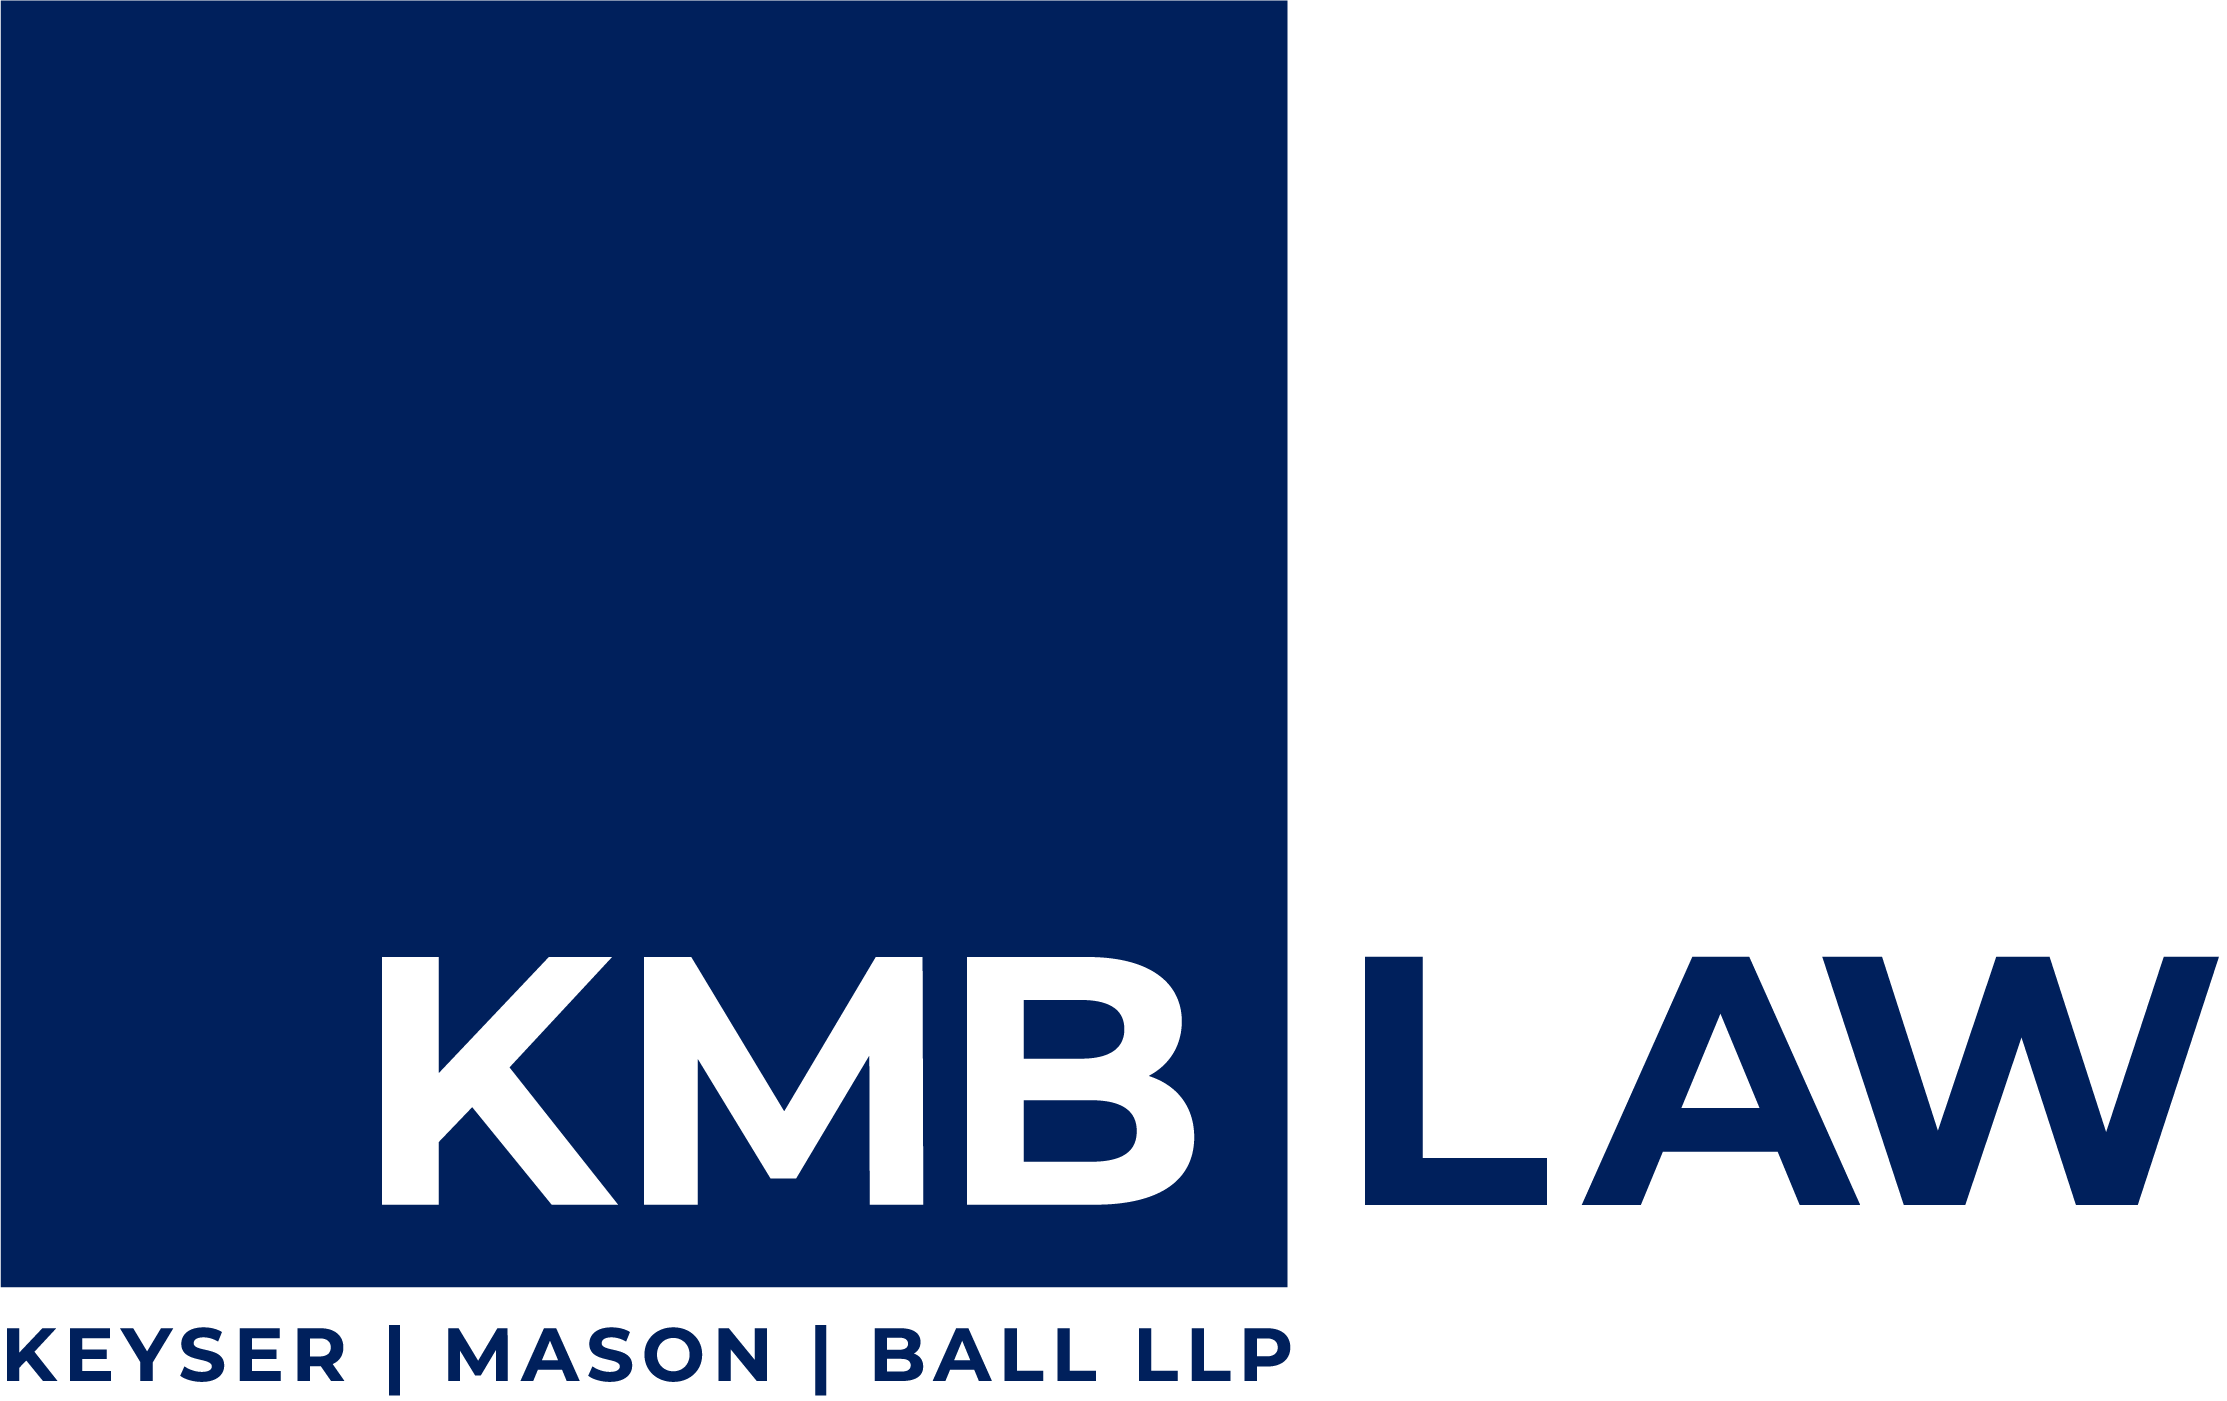 KMB Law company logo